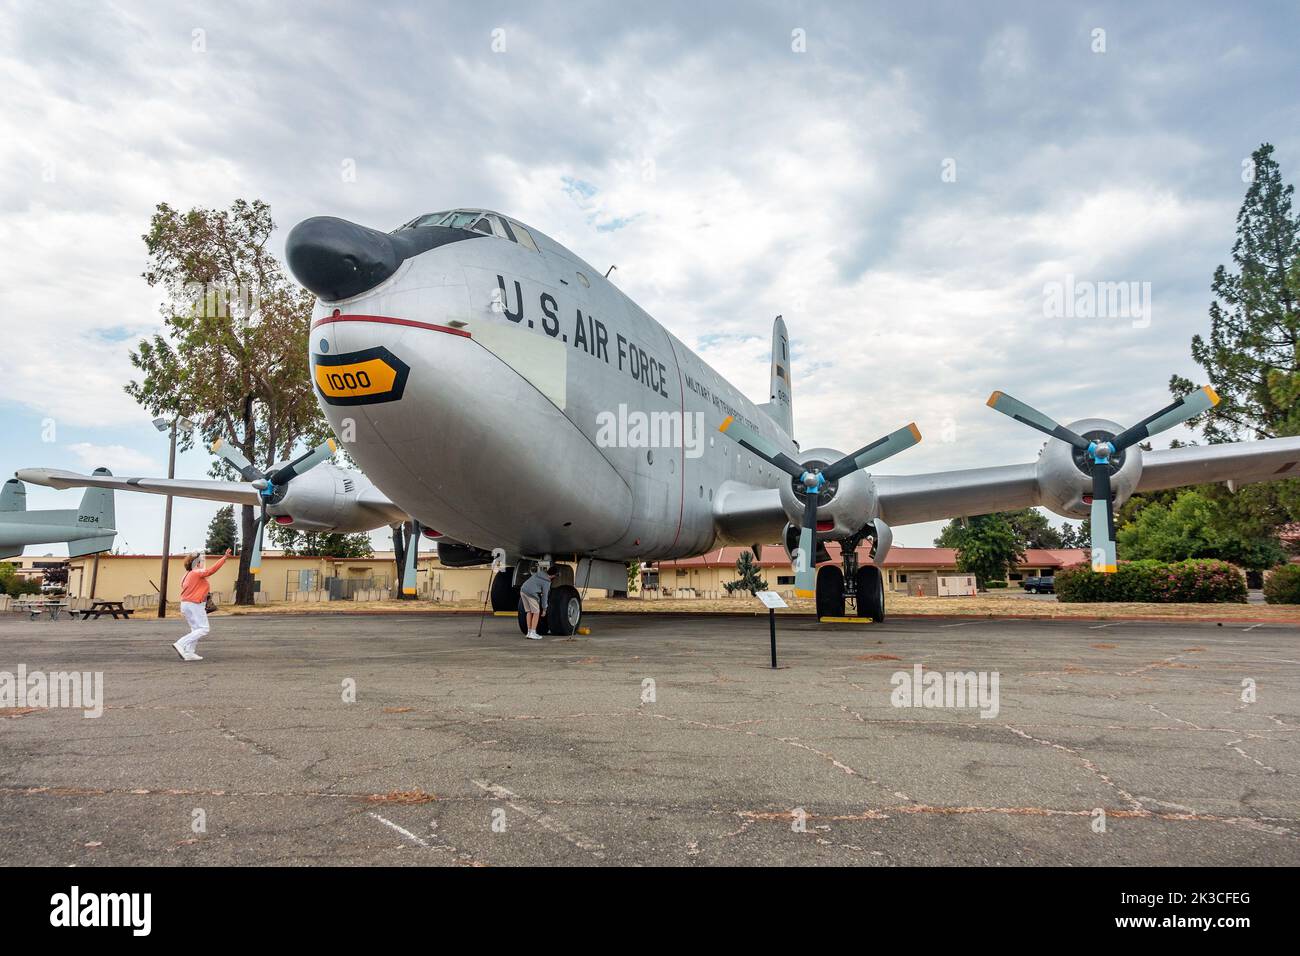 Un avion de transport américain Douglas C-124 Globemaster exposé à la base aérienne de Travis, en Californie, aux États-Unis Banque D'Images